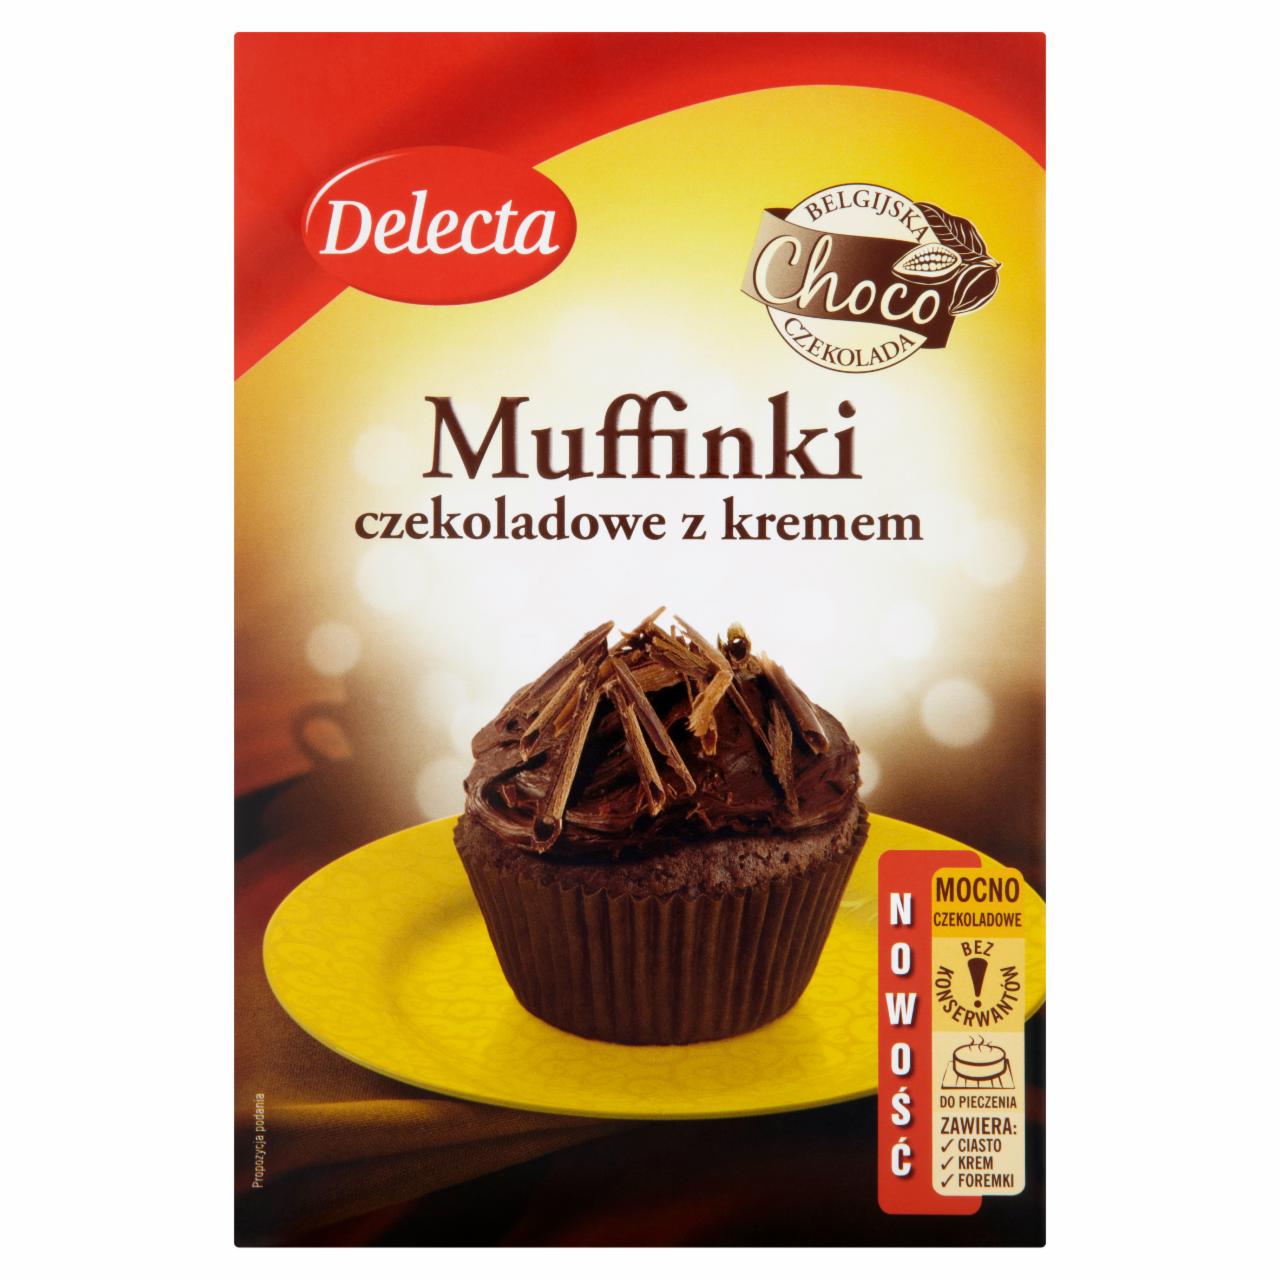 Zdjęcia - Delecta Muffinki czekoladowe z kremem 380 g